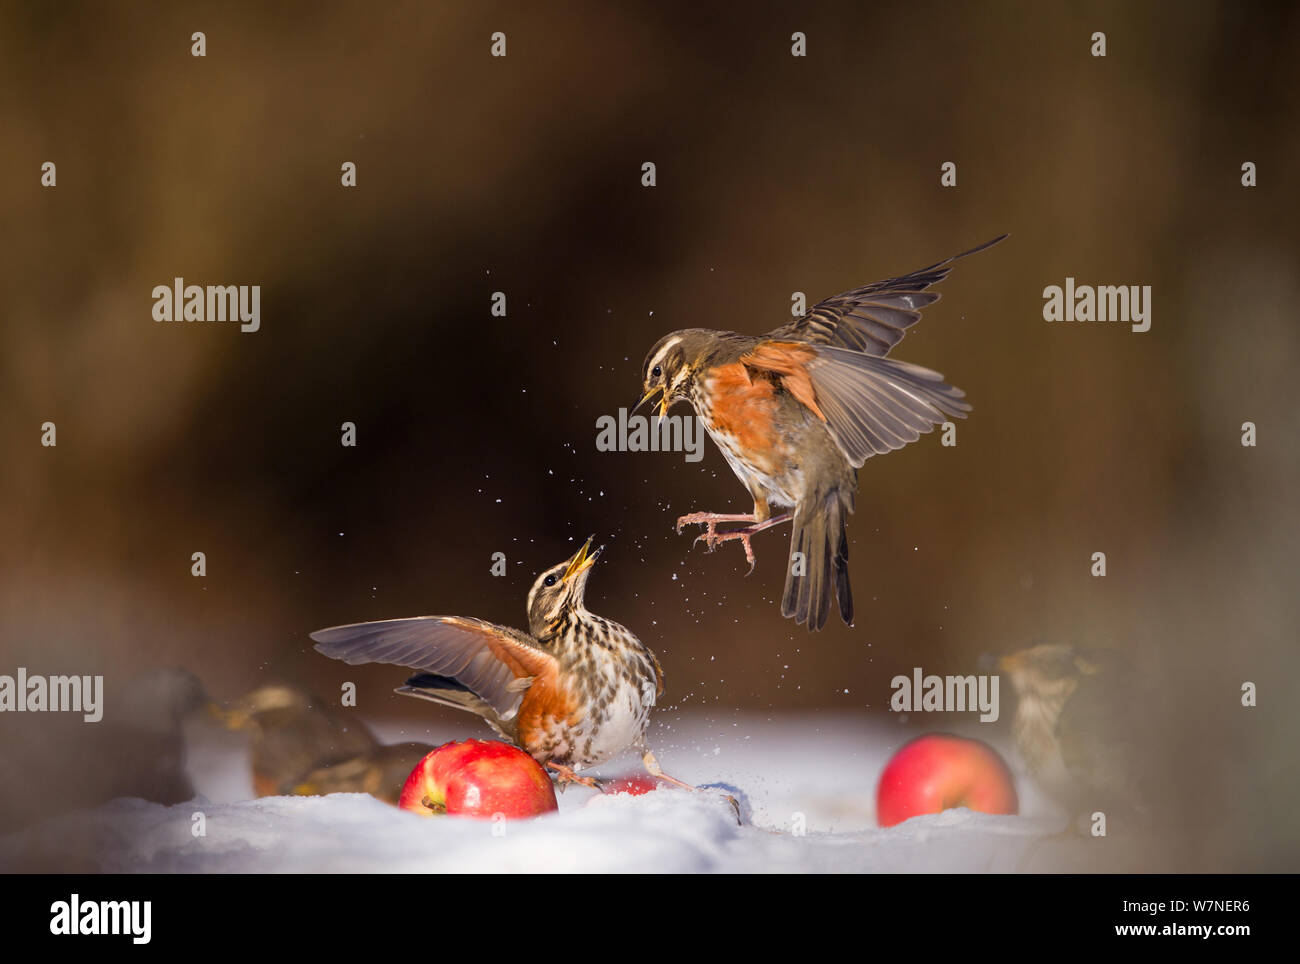 Redwings (Turdus Iliacus) Streit um ein Apple im Schnee. Derbyshire, Großbritannien, Februar. Britischer Naturfotograf des Jahres (Bwpa) Wettbewerb 2012, "das Verhalten der Tiere' Kategorie. (Nicht-Ex) Stockfoto